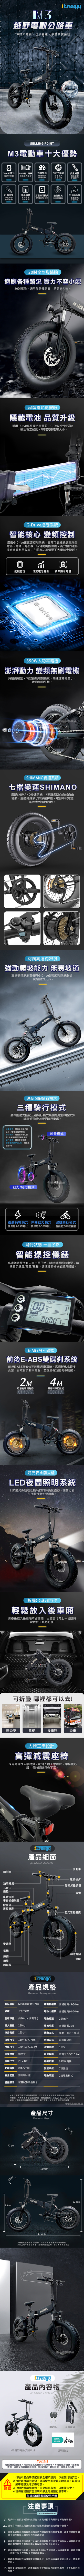 【iFreego】M3越野電動公路車 50公里續行+20吋胎 電動自行車/腳踏車